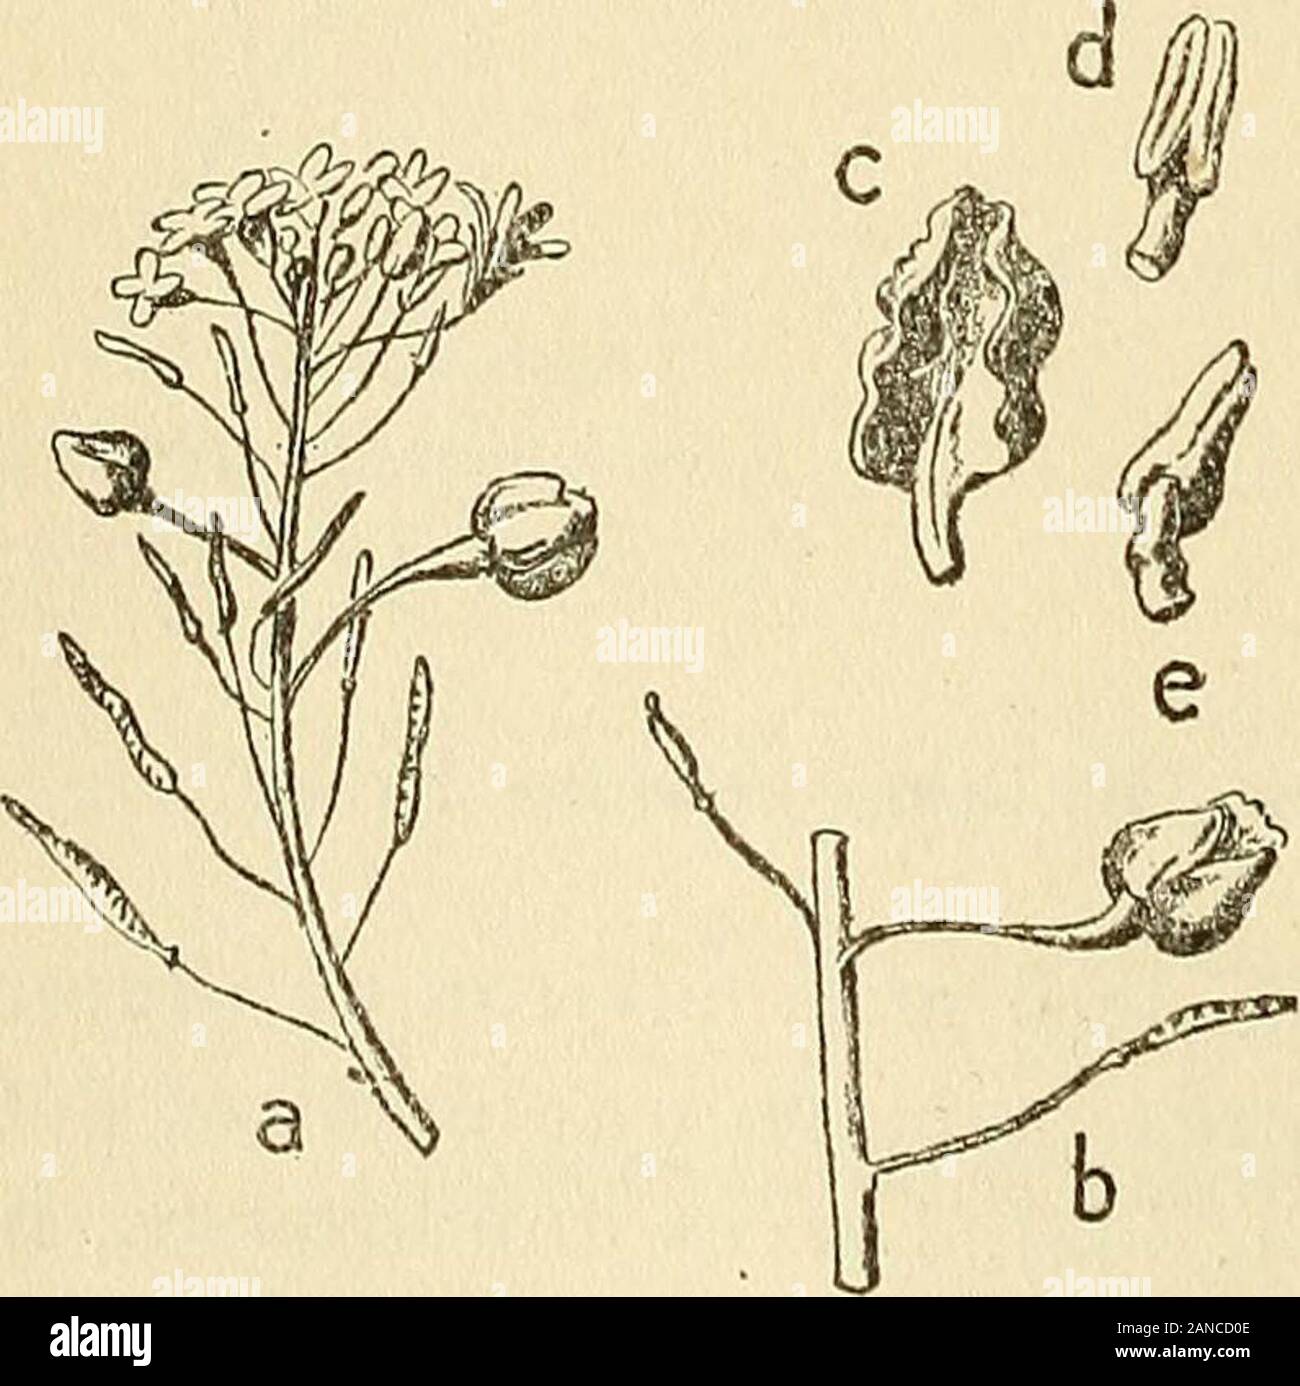 Les zoocécidies des plantes d'Afrique, d'Asie et d'Océanie : description des galles, illustration, bibliographie détaillée, répartition géographique, index bibliographique . 1848-1349, n^GGg;,!!^. ilo-2,lW6, © ; TR. Trotter, igiîi,p.7r),rii2,p.88. I CRUCIFERES 288 Pl.ti. — Renflement caulinaire, subfusiforme, de 8-i5 mm. de long-sur 3-6 mm. de diamètre transversal, situé le plus souventdans la région de linflorescence ijit^. GgS) ; il renferme unecavité allongée. [Coléoptère] 1039 trotter,i9i4,p.ii,n°20,pl.II,2, ©; i9i5,p.88. TR. nSplotaïKis [anaralls DC] Pire. — Léger renflement de laxe di Stock Photo